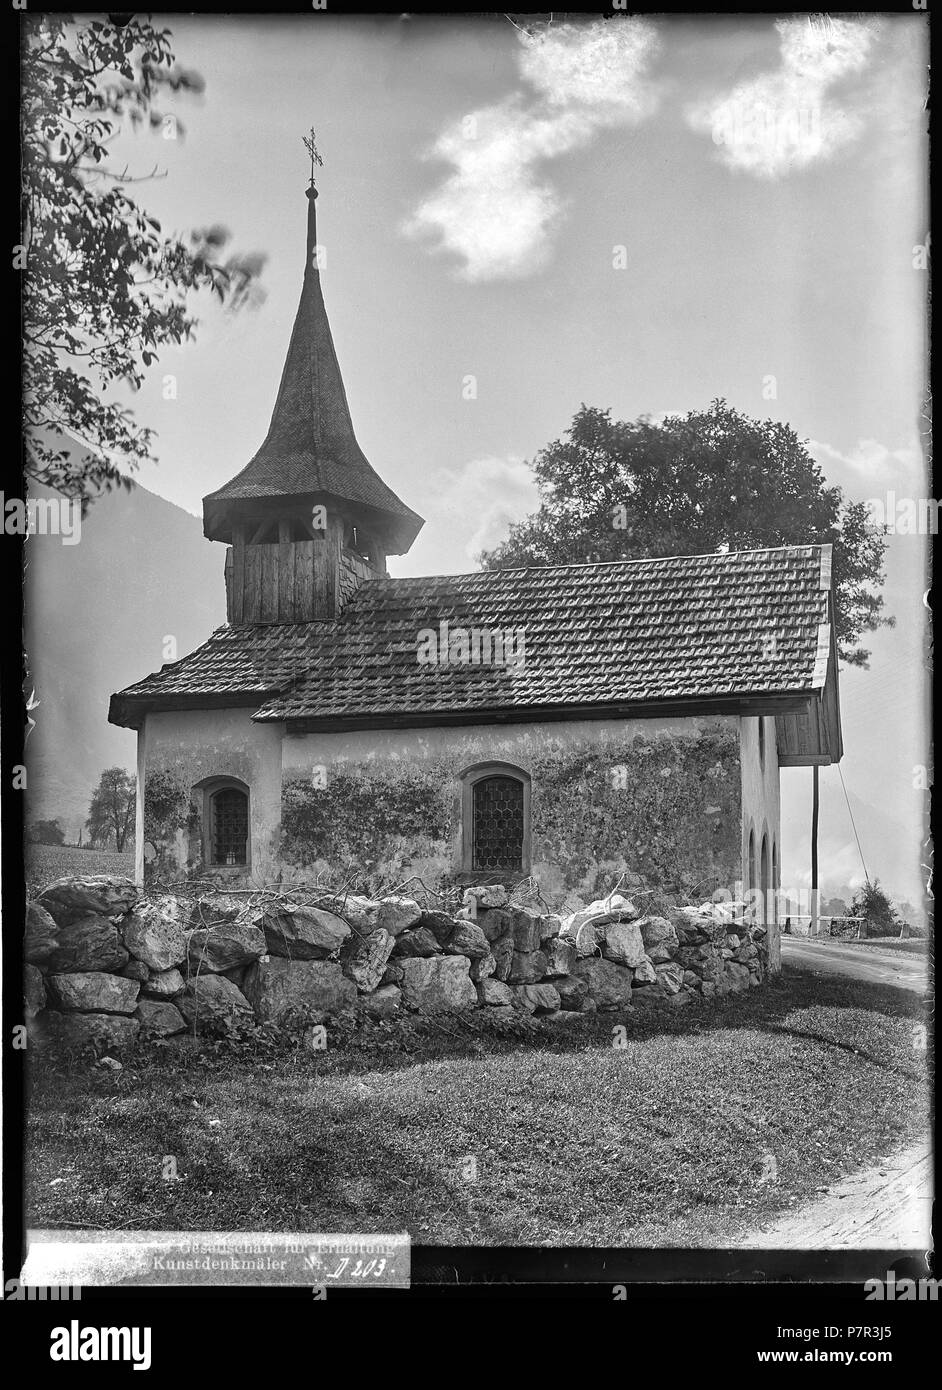 82 CH-NB - Silenen, Ellbogenkapelle, vue d'ensemble extérieure - Collection Max van Berchem - EAD-6788 Stock Photo